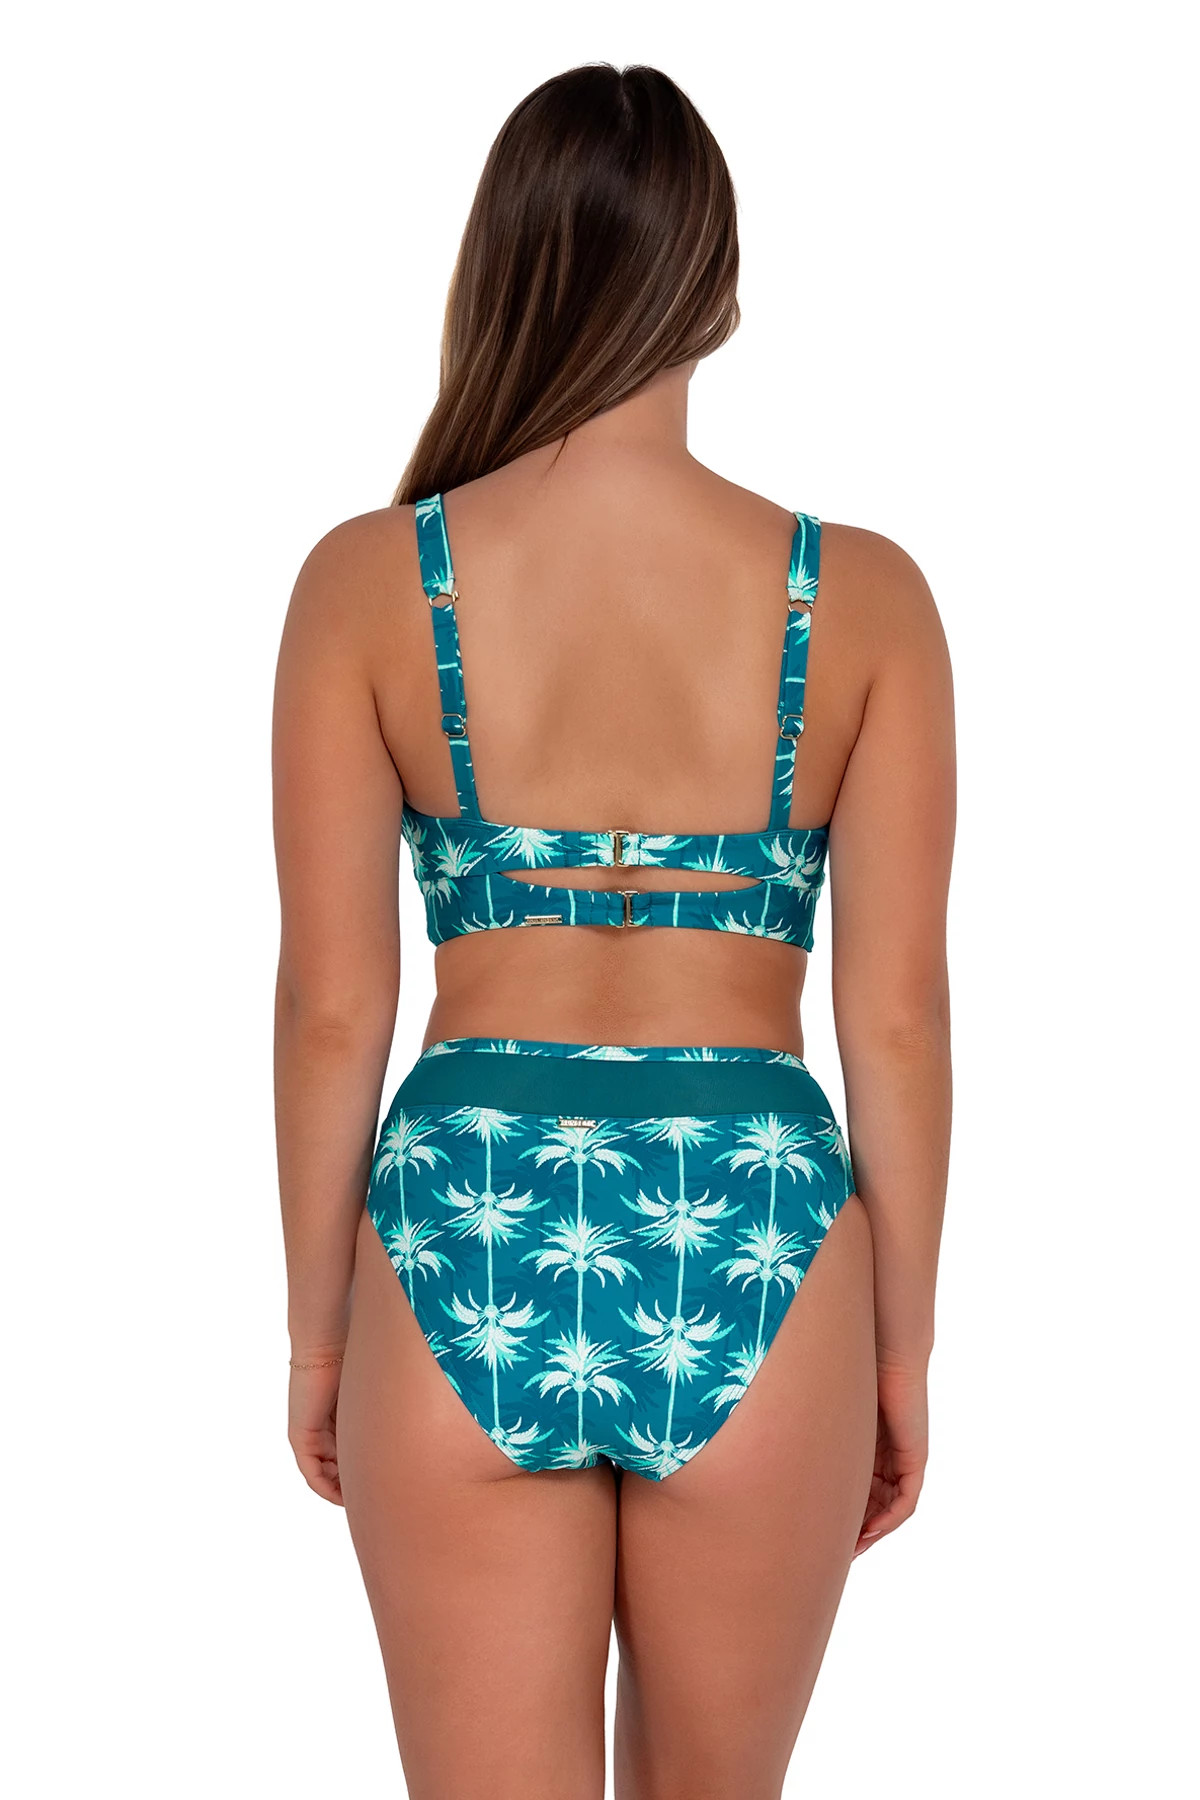 PALM BEACH Danica Underwire Bikini Top (D+ Cup) image number 3